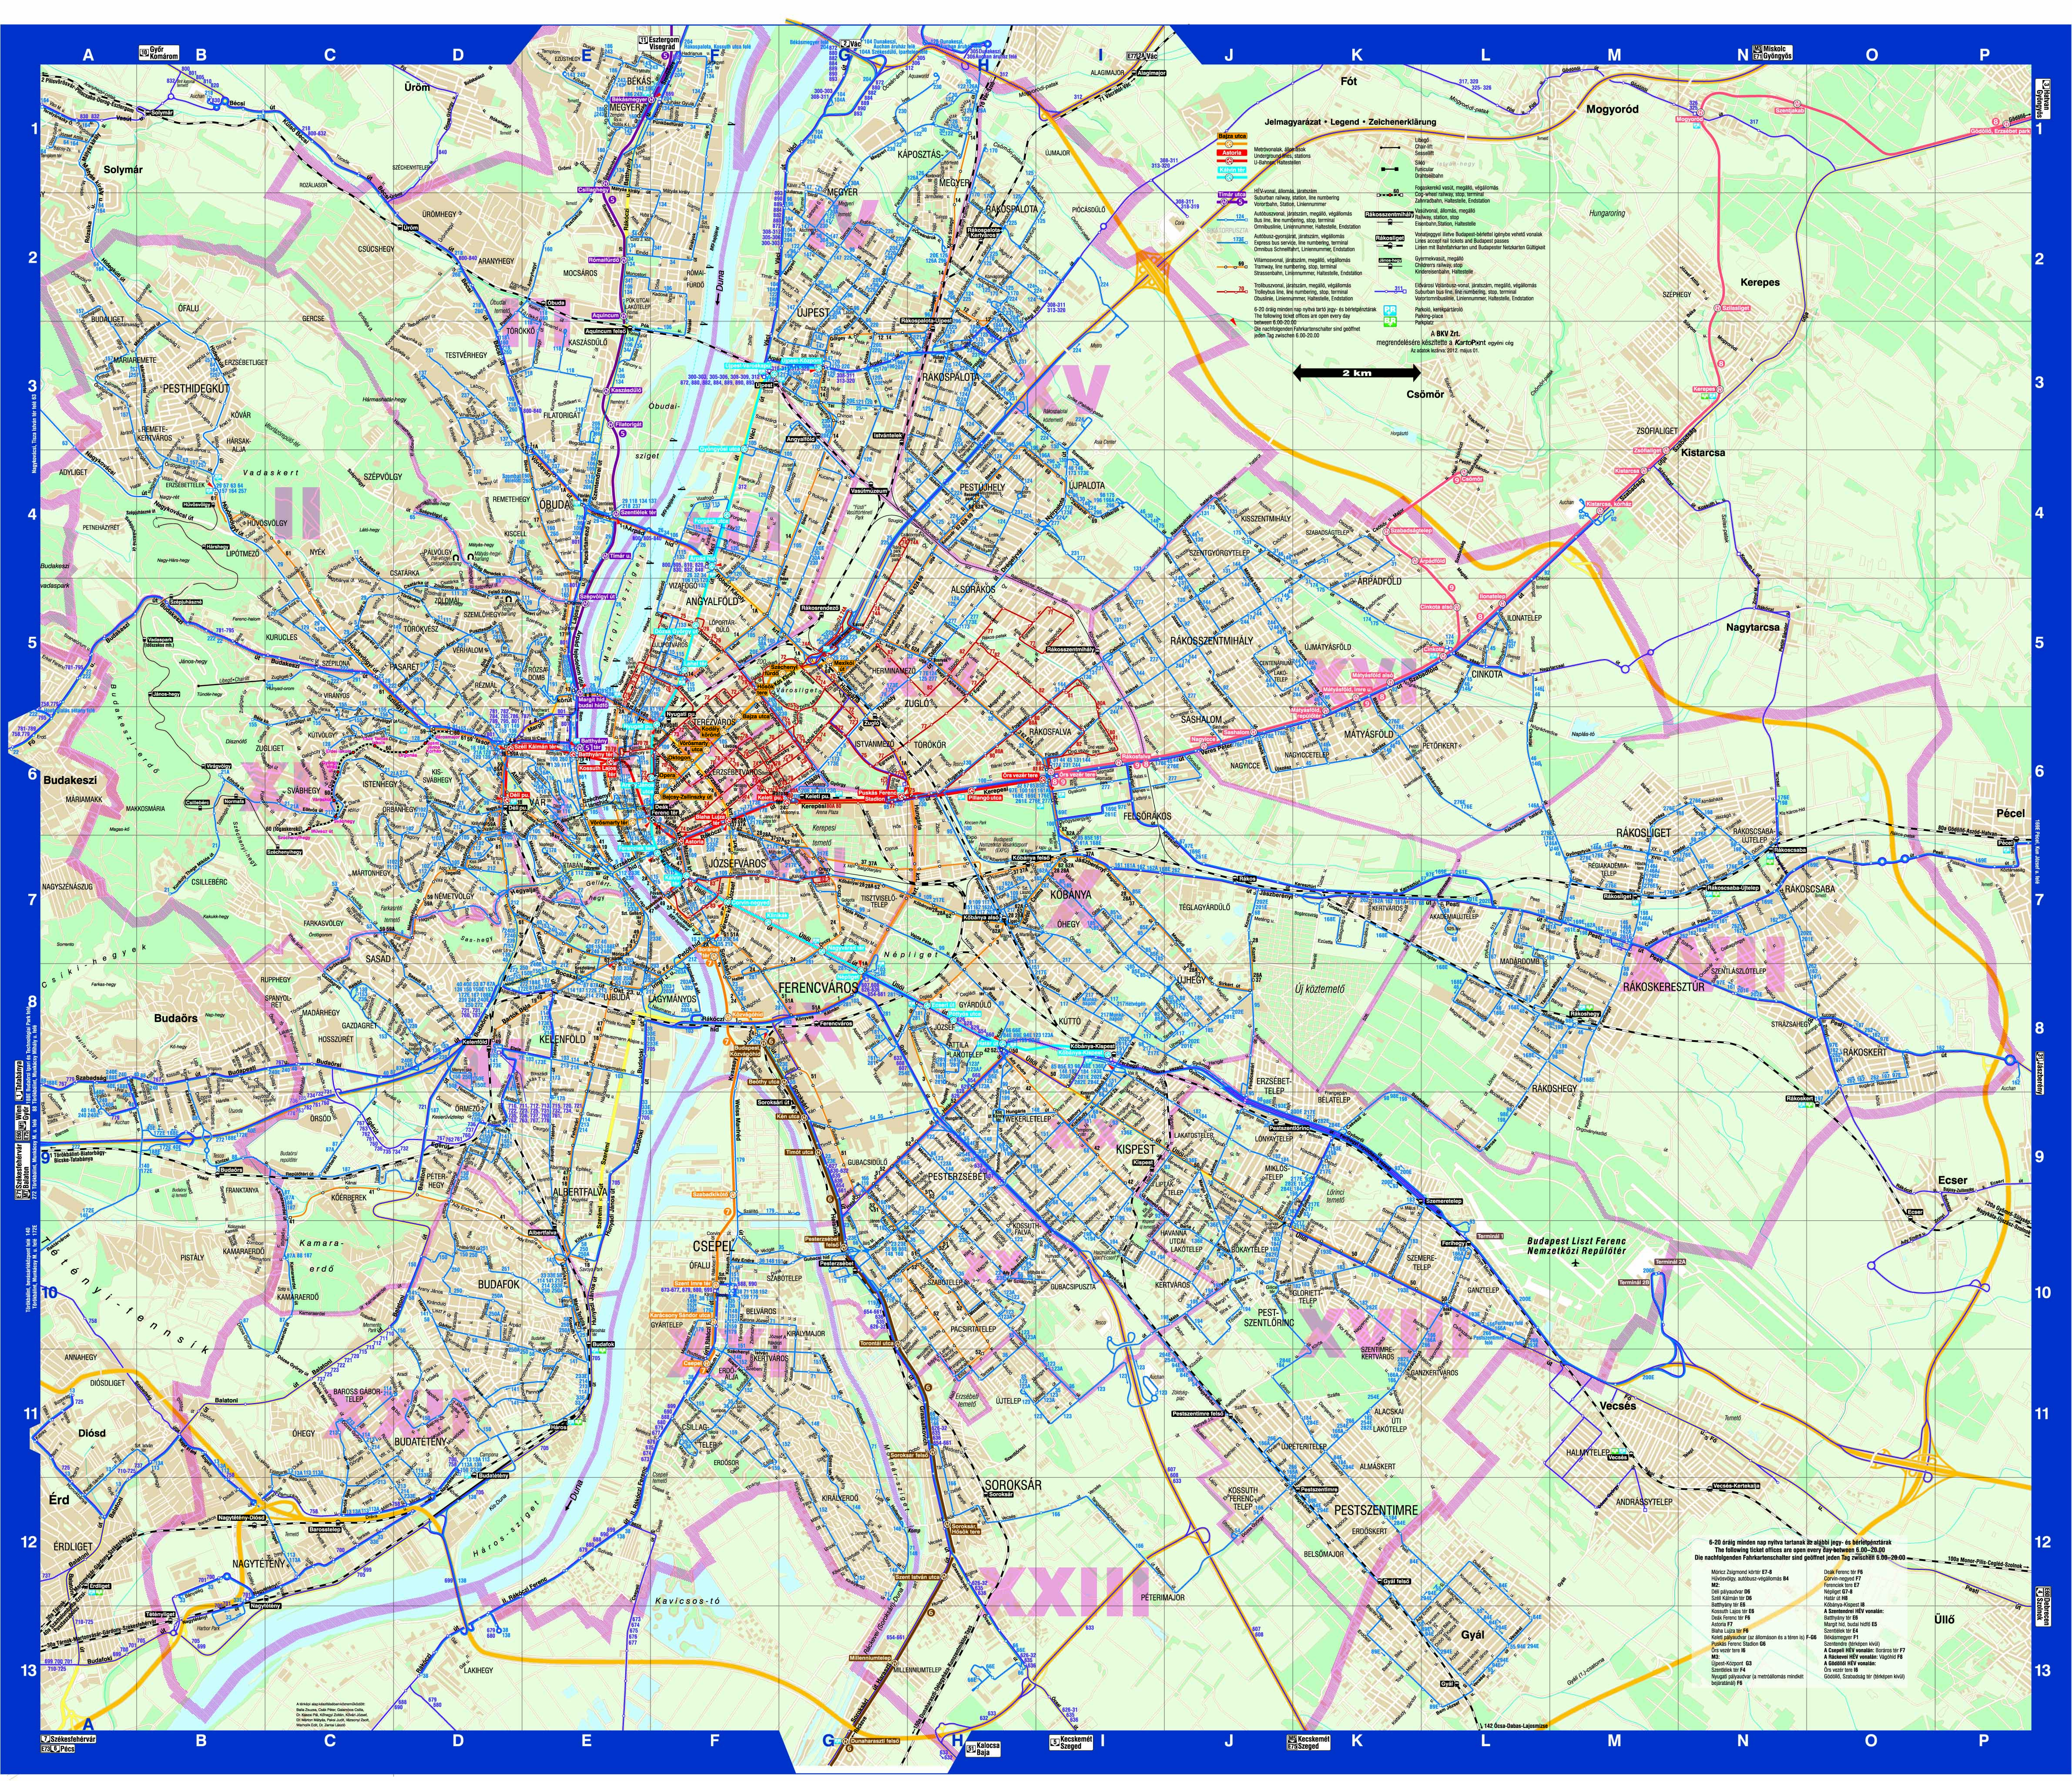 budapest térkép közlekedéssel Agocs Robert_Diplomamunka1 budapest térkép közlekedéssel